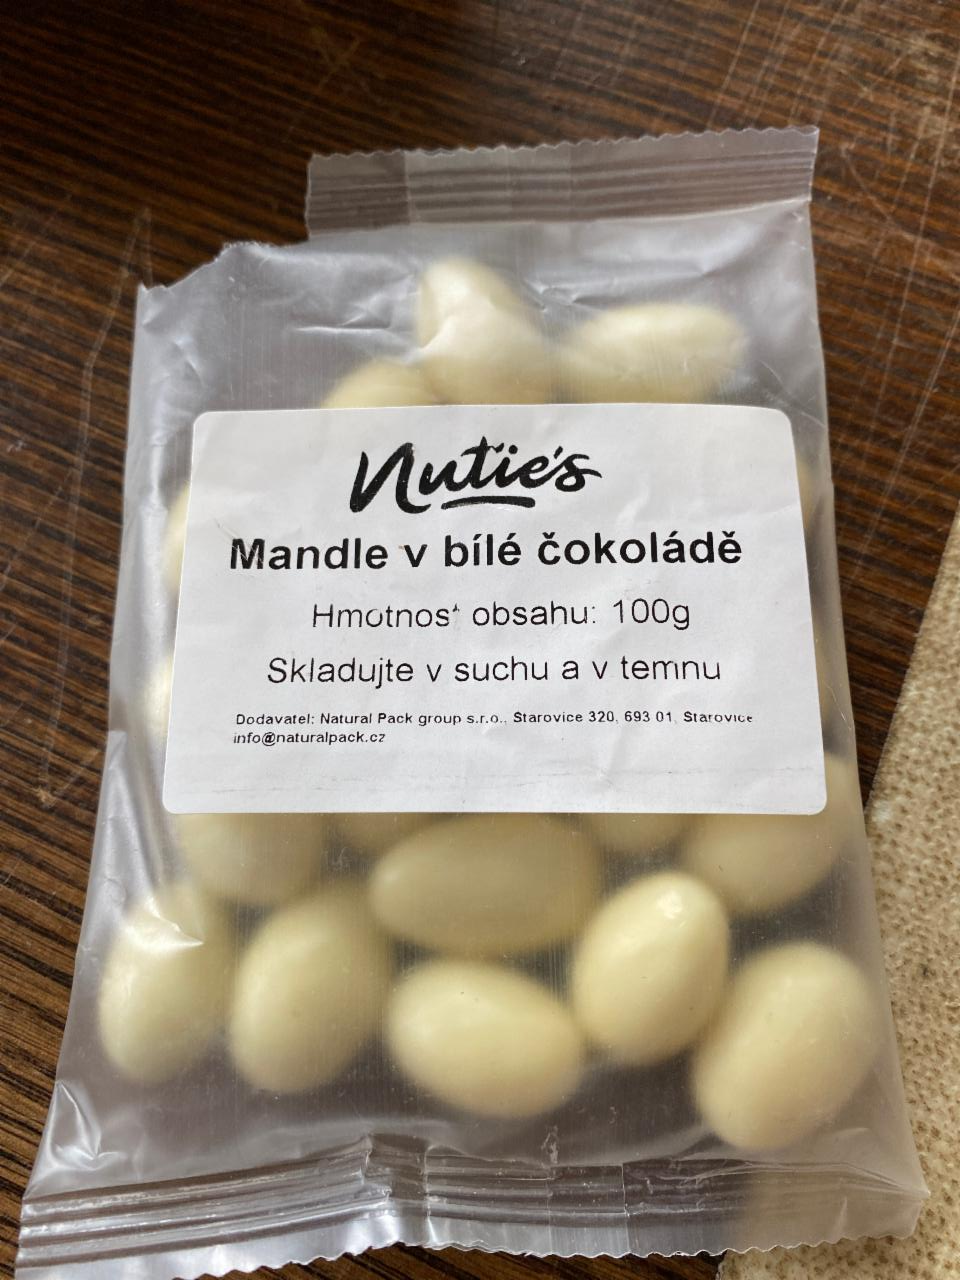 Fotografie - Mandle v bílé čokoládě Nutie´s